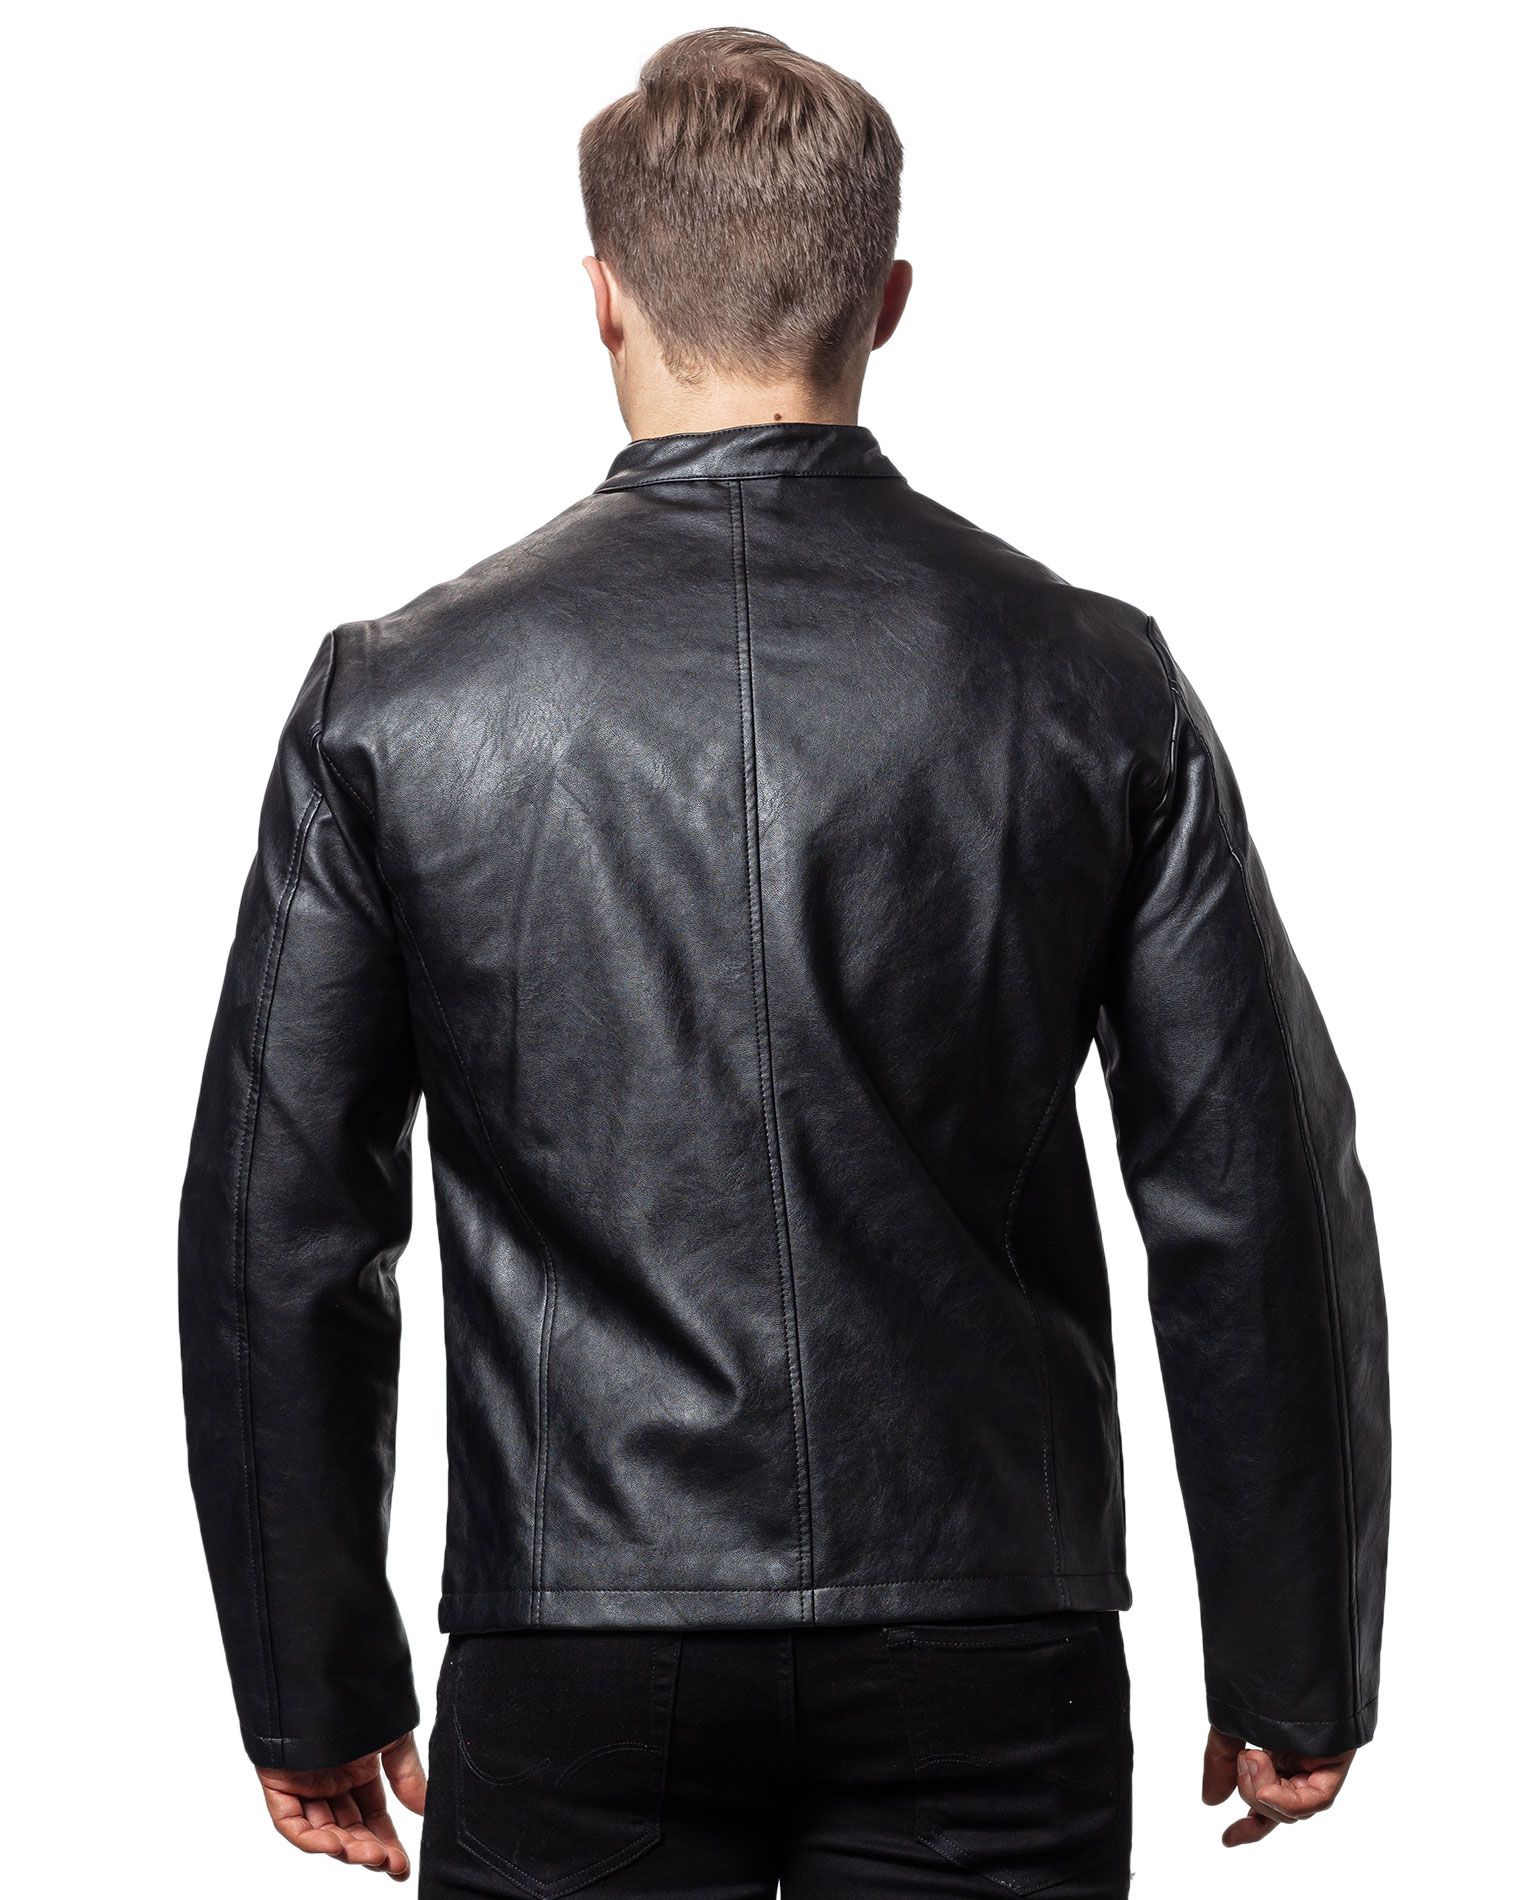 Connor Jacket Jack & Jones - 5004 - Leather Jackets - Jerone